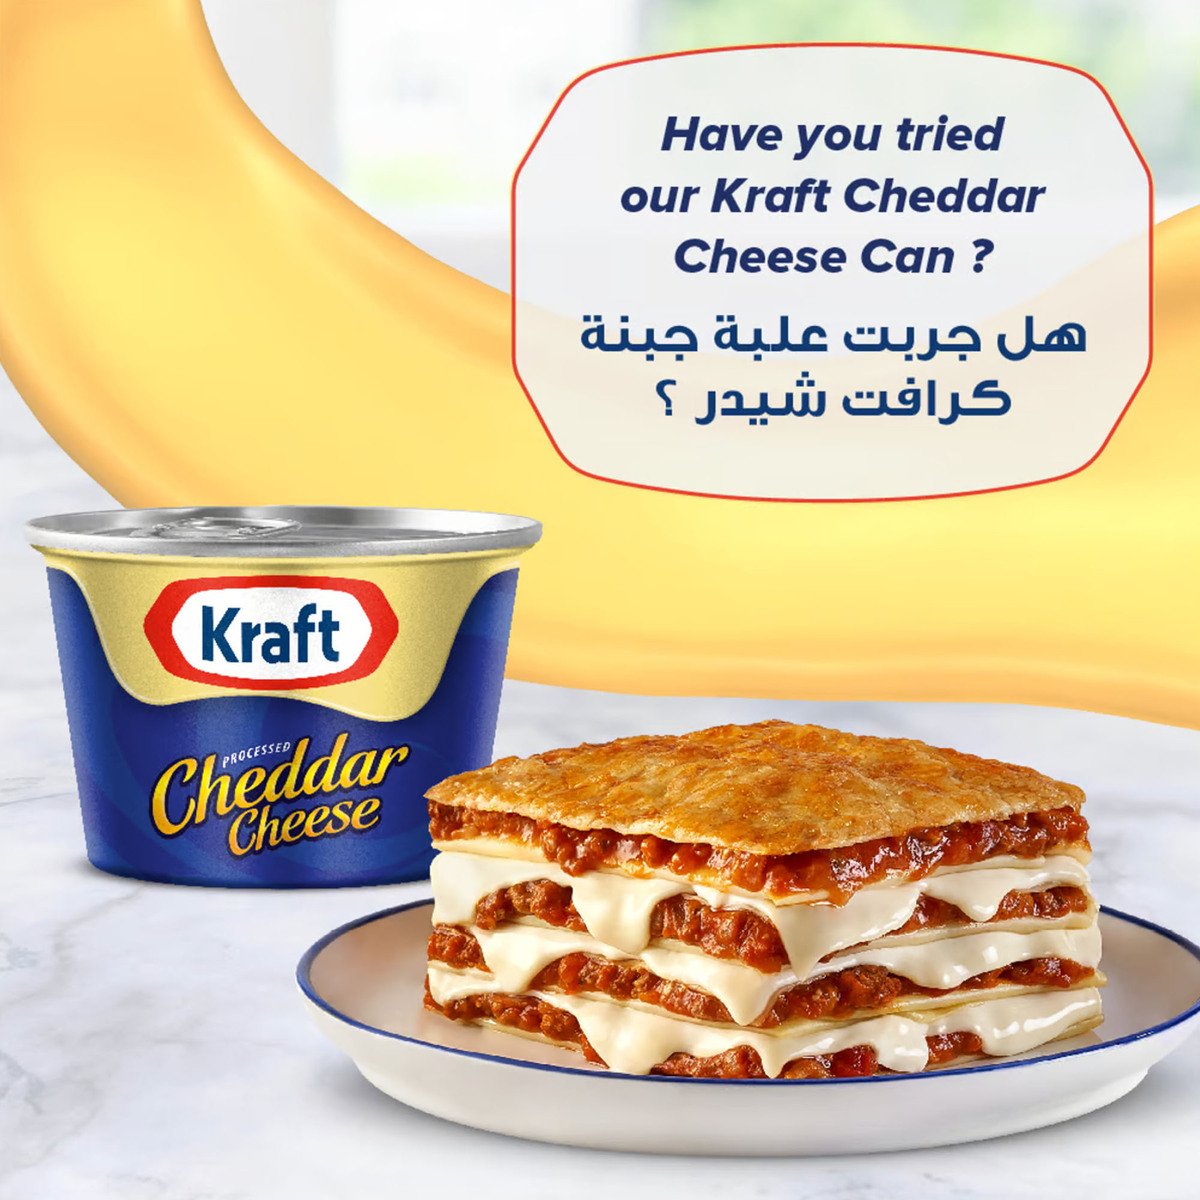 Kraft Processed Cheddar Cheese 2 x 250g